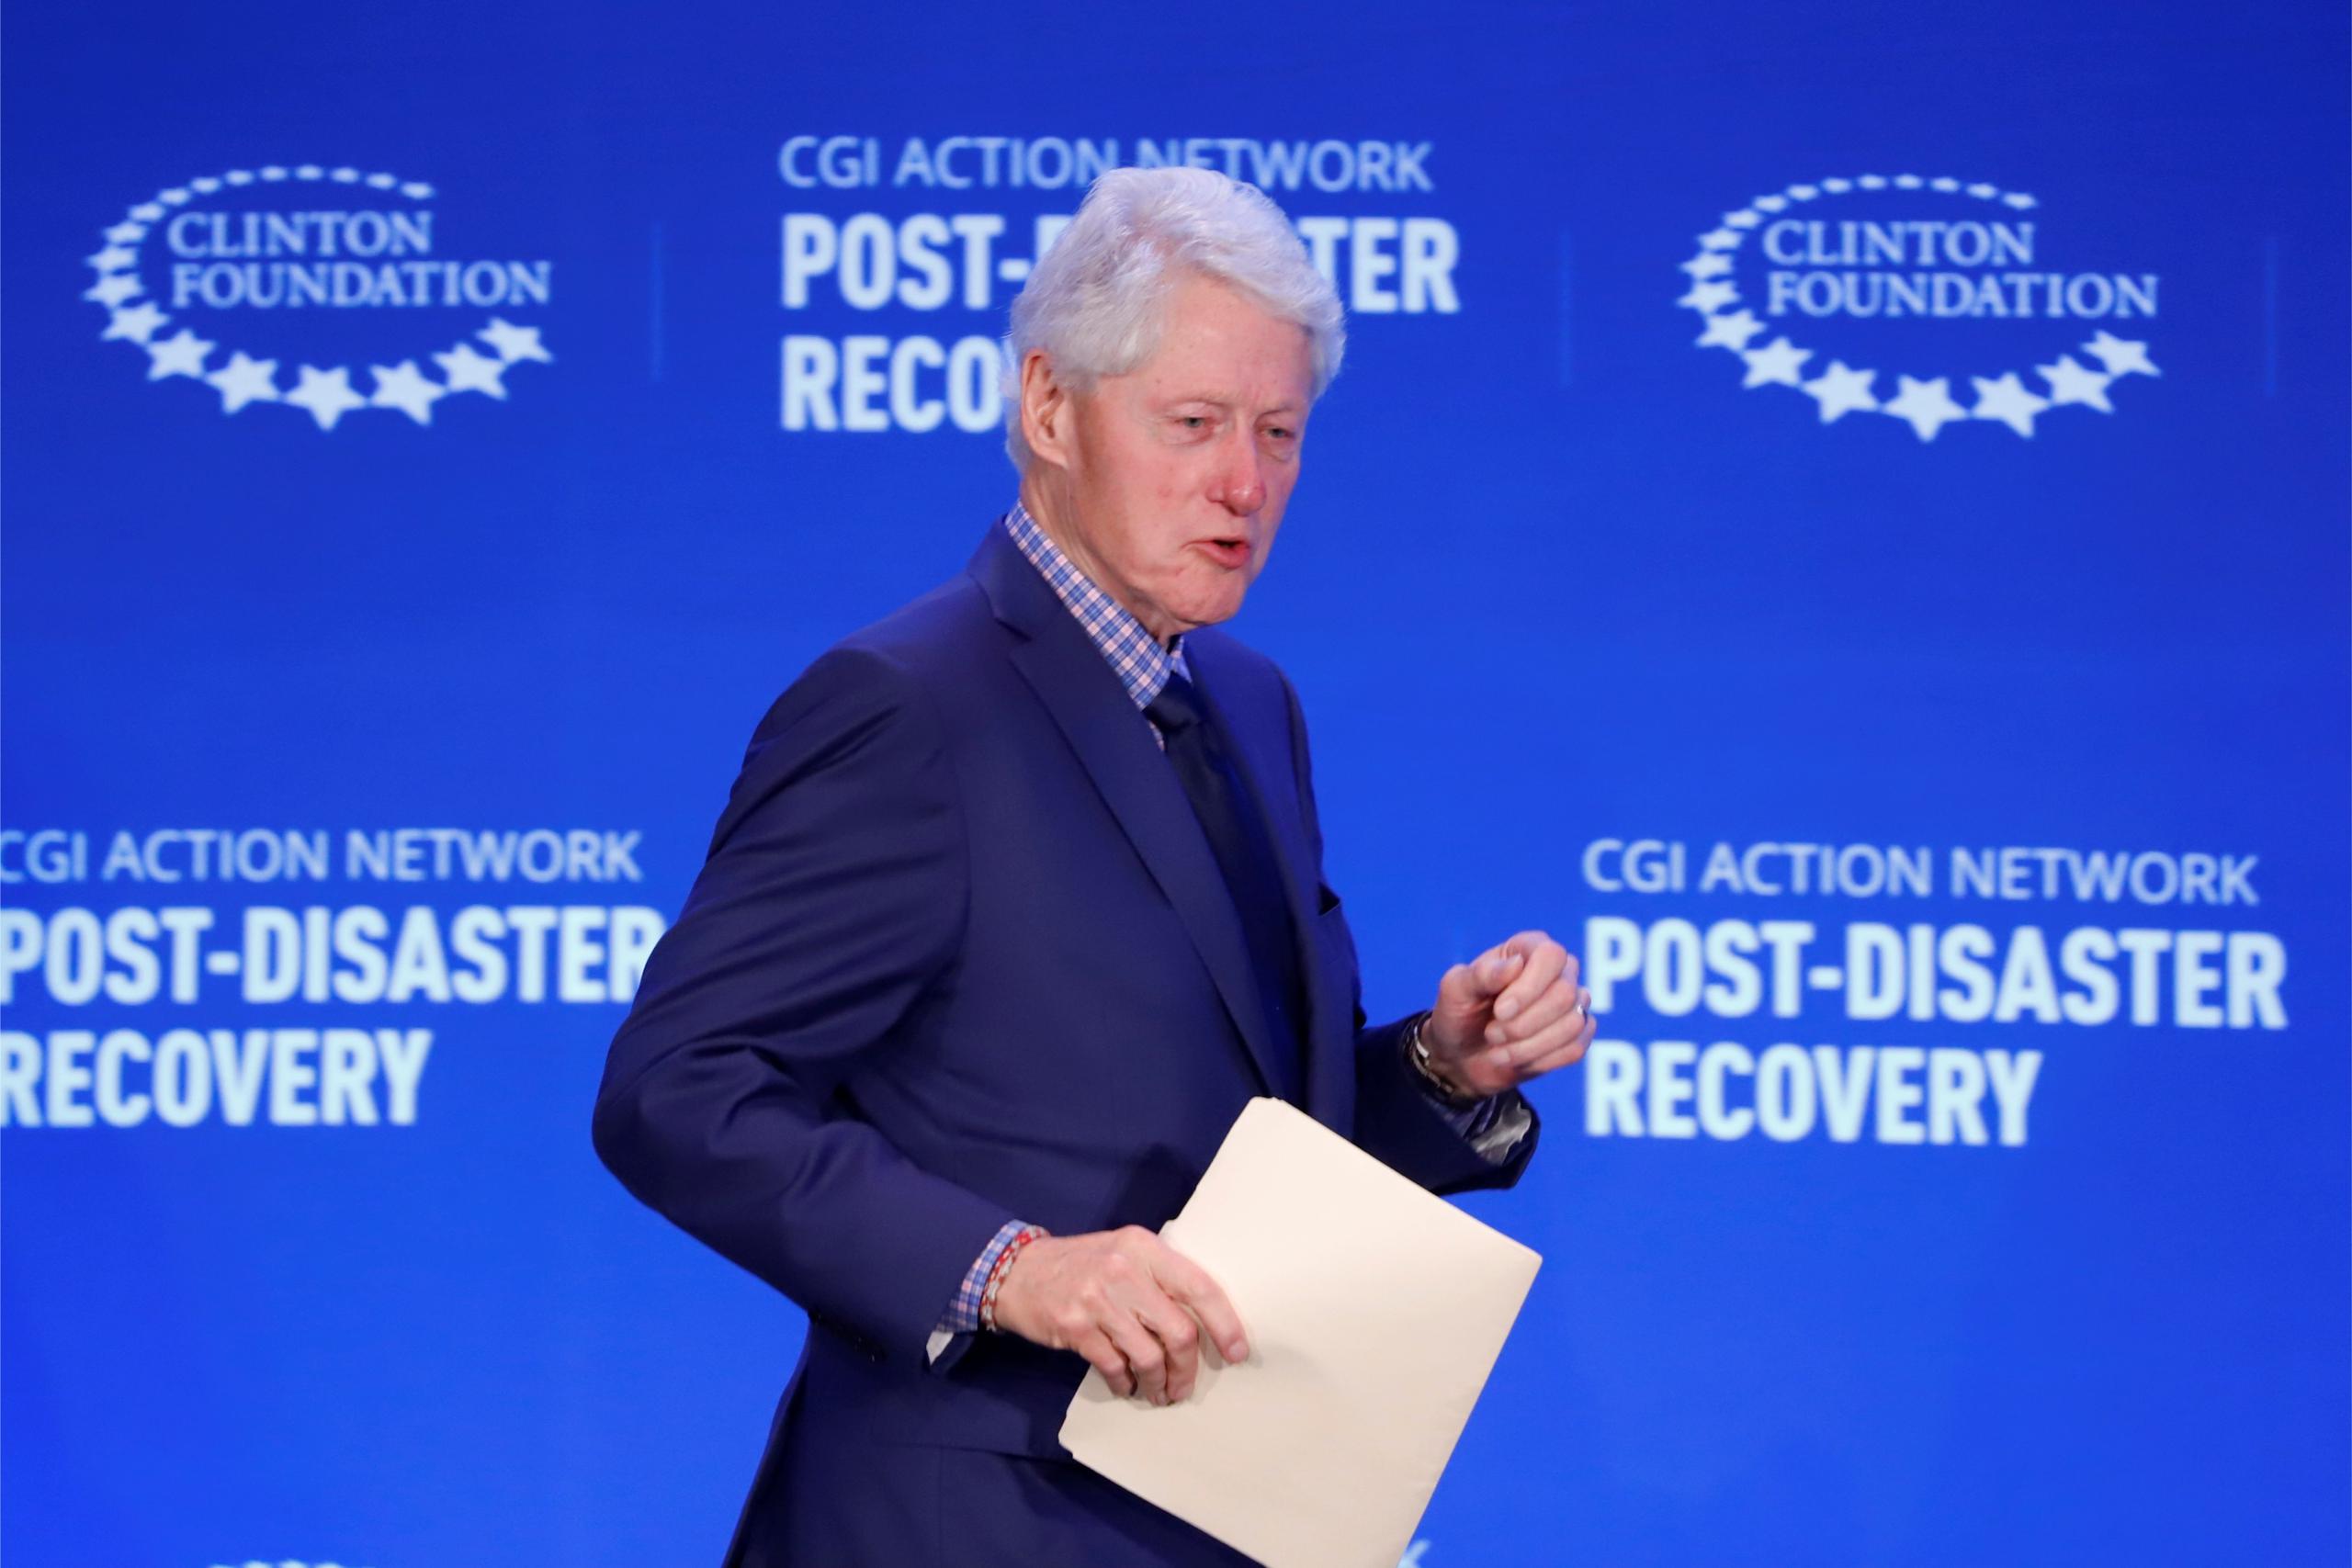 Bill Clinton afirma durante uno de los capítulos de la miniserie de Hulu que el caso "era algo con lo que podía desconectar la mente por un momento" y que todo el mundo en su vida tiene "presiones, decepciones y miedos".